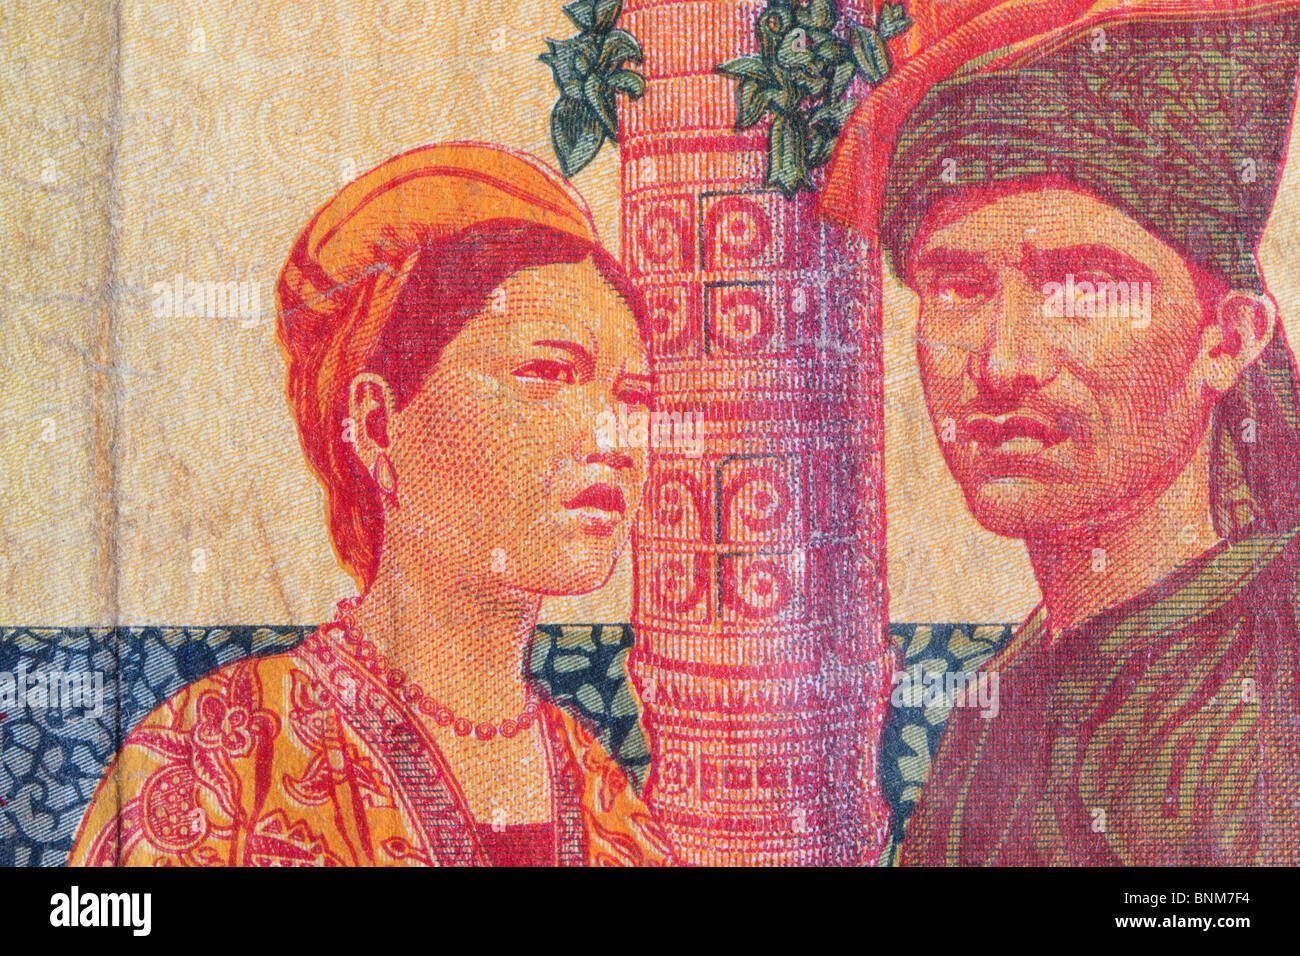 Vintage monnaie indonésienne close up of a man and woman Banque D'Images